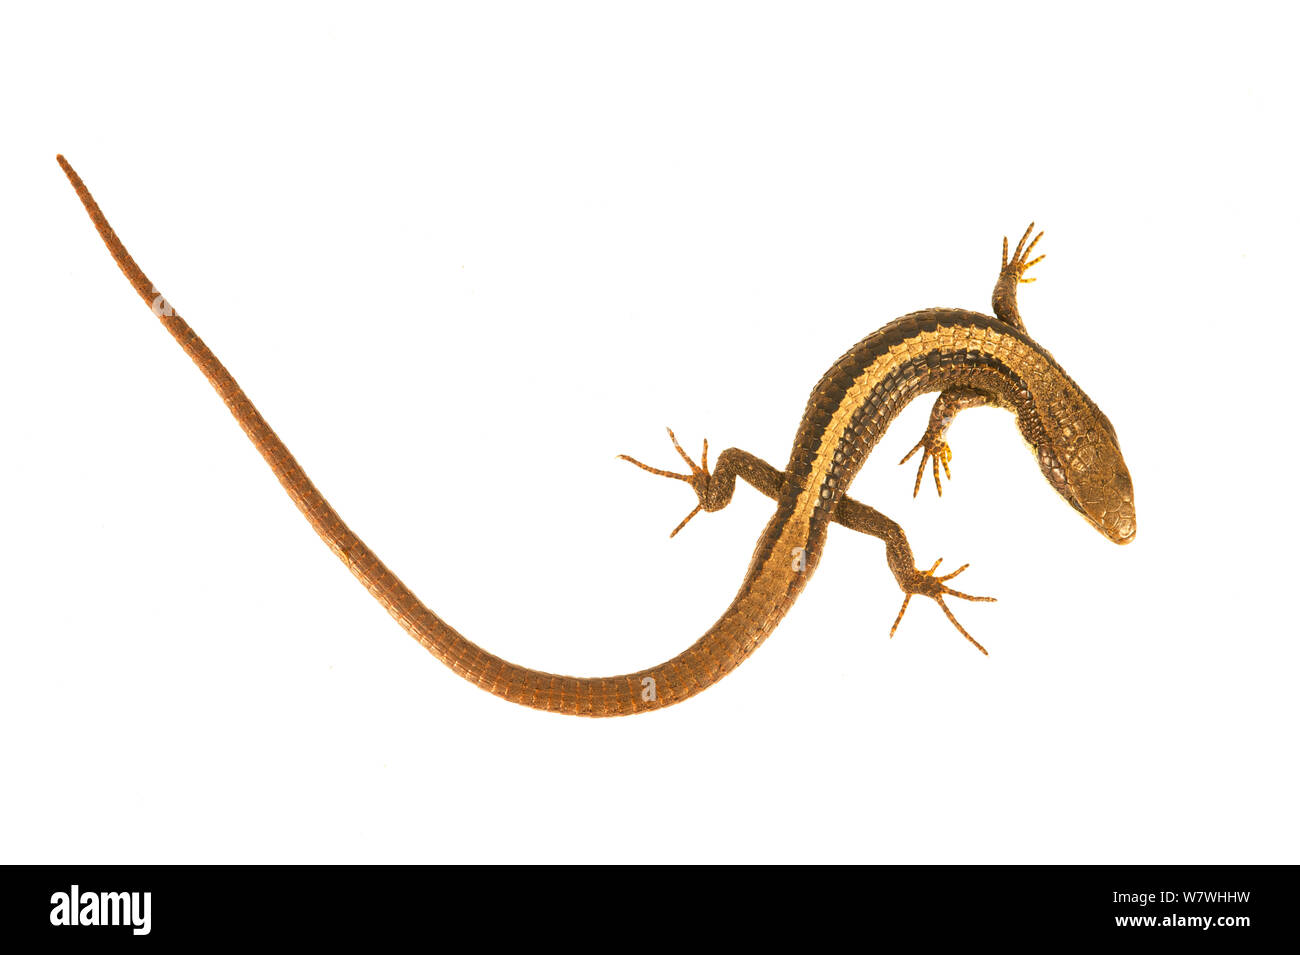 Lizard Proctoporus (sp) Ande, prese contro uno sfondo bianco, Bolivia. Foto Stock